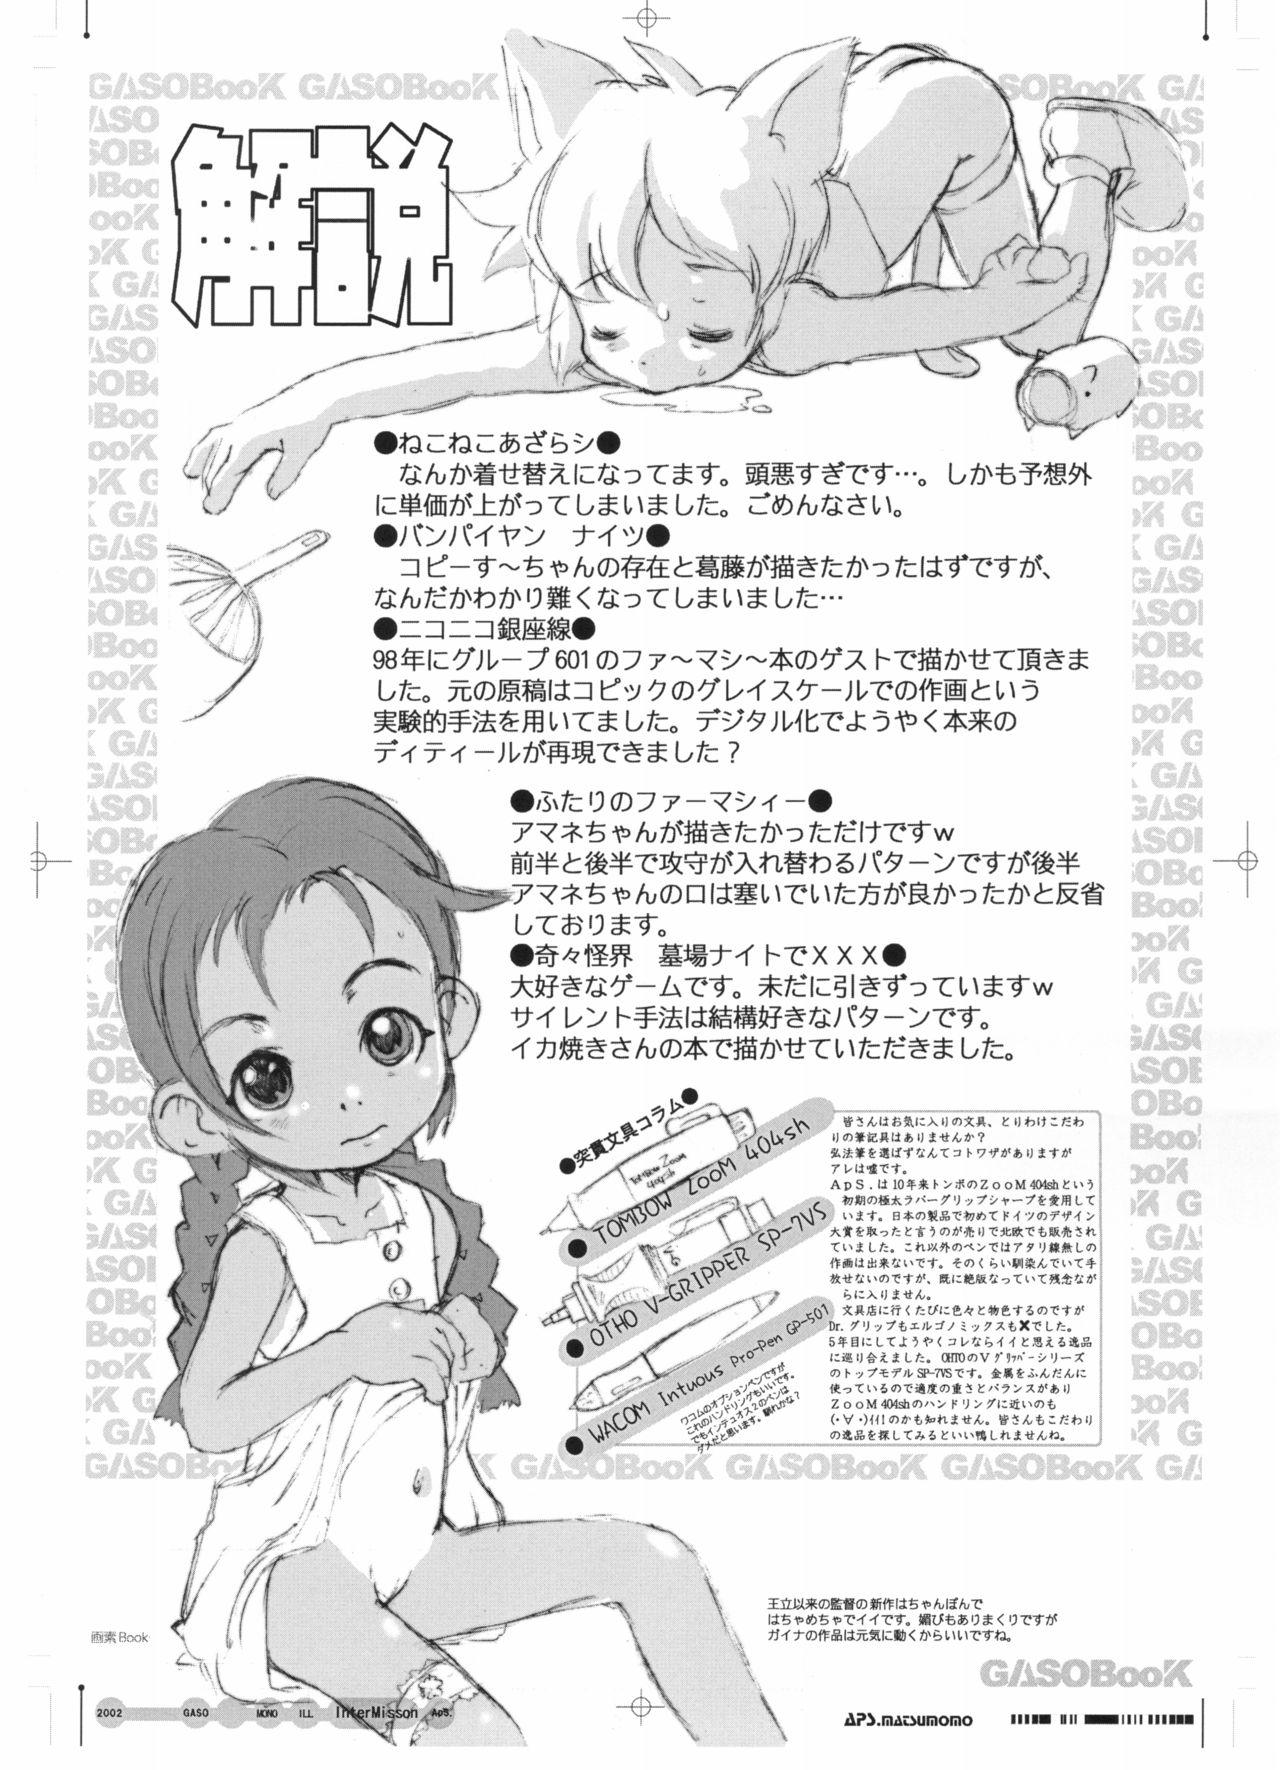 GASOBooK Genkou Youshi Kidz AnimeTronica'Z -0208 25